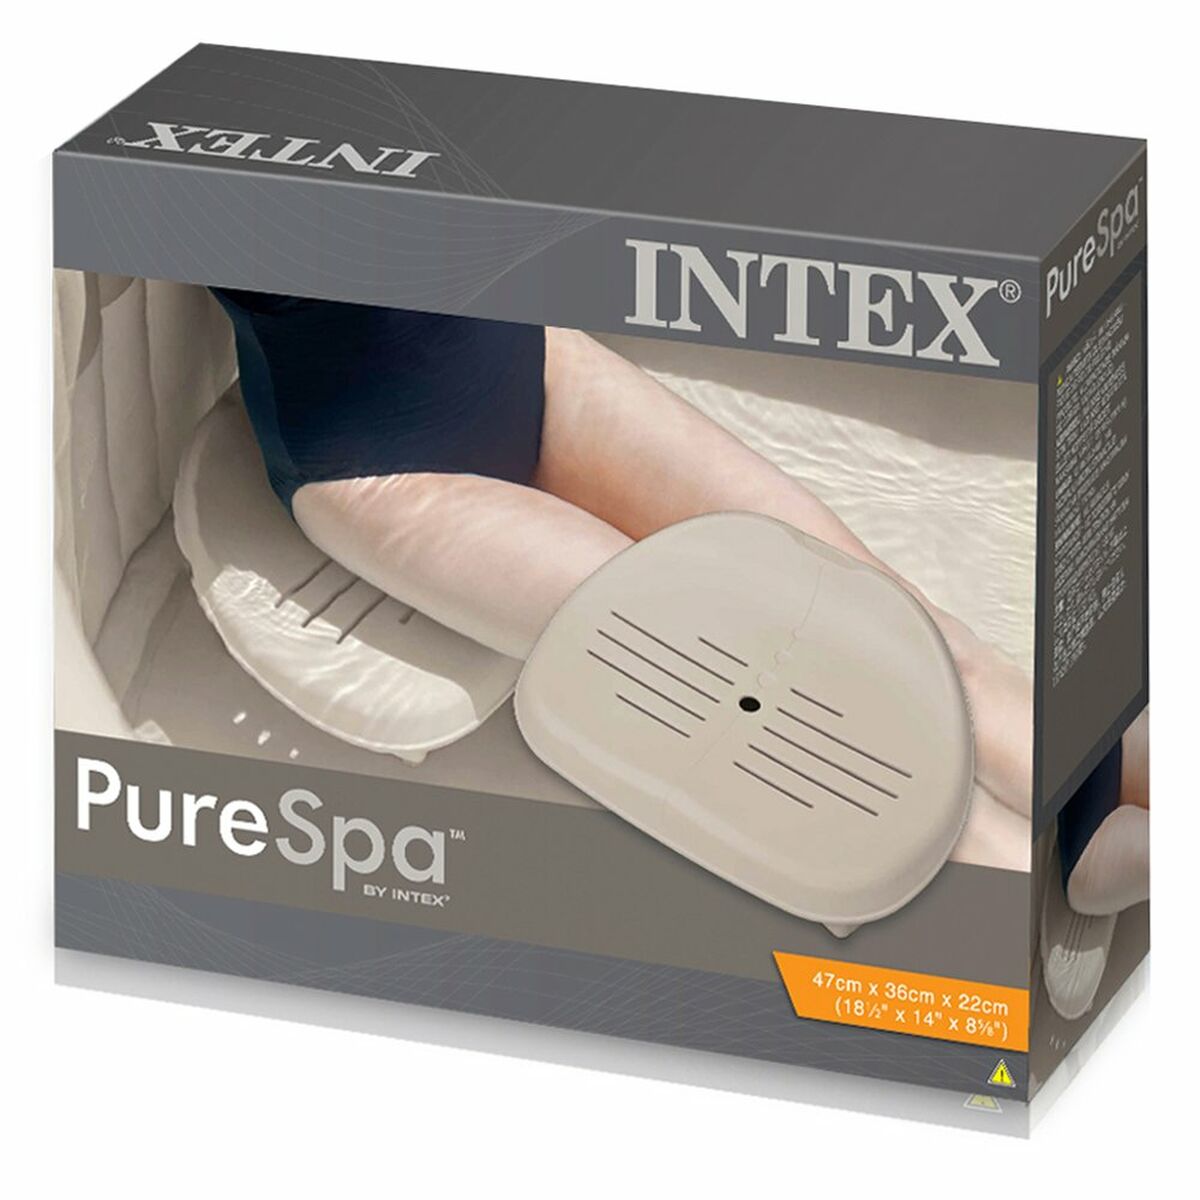 Sæde Intex Pure Spa